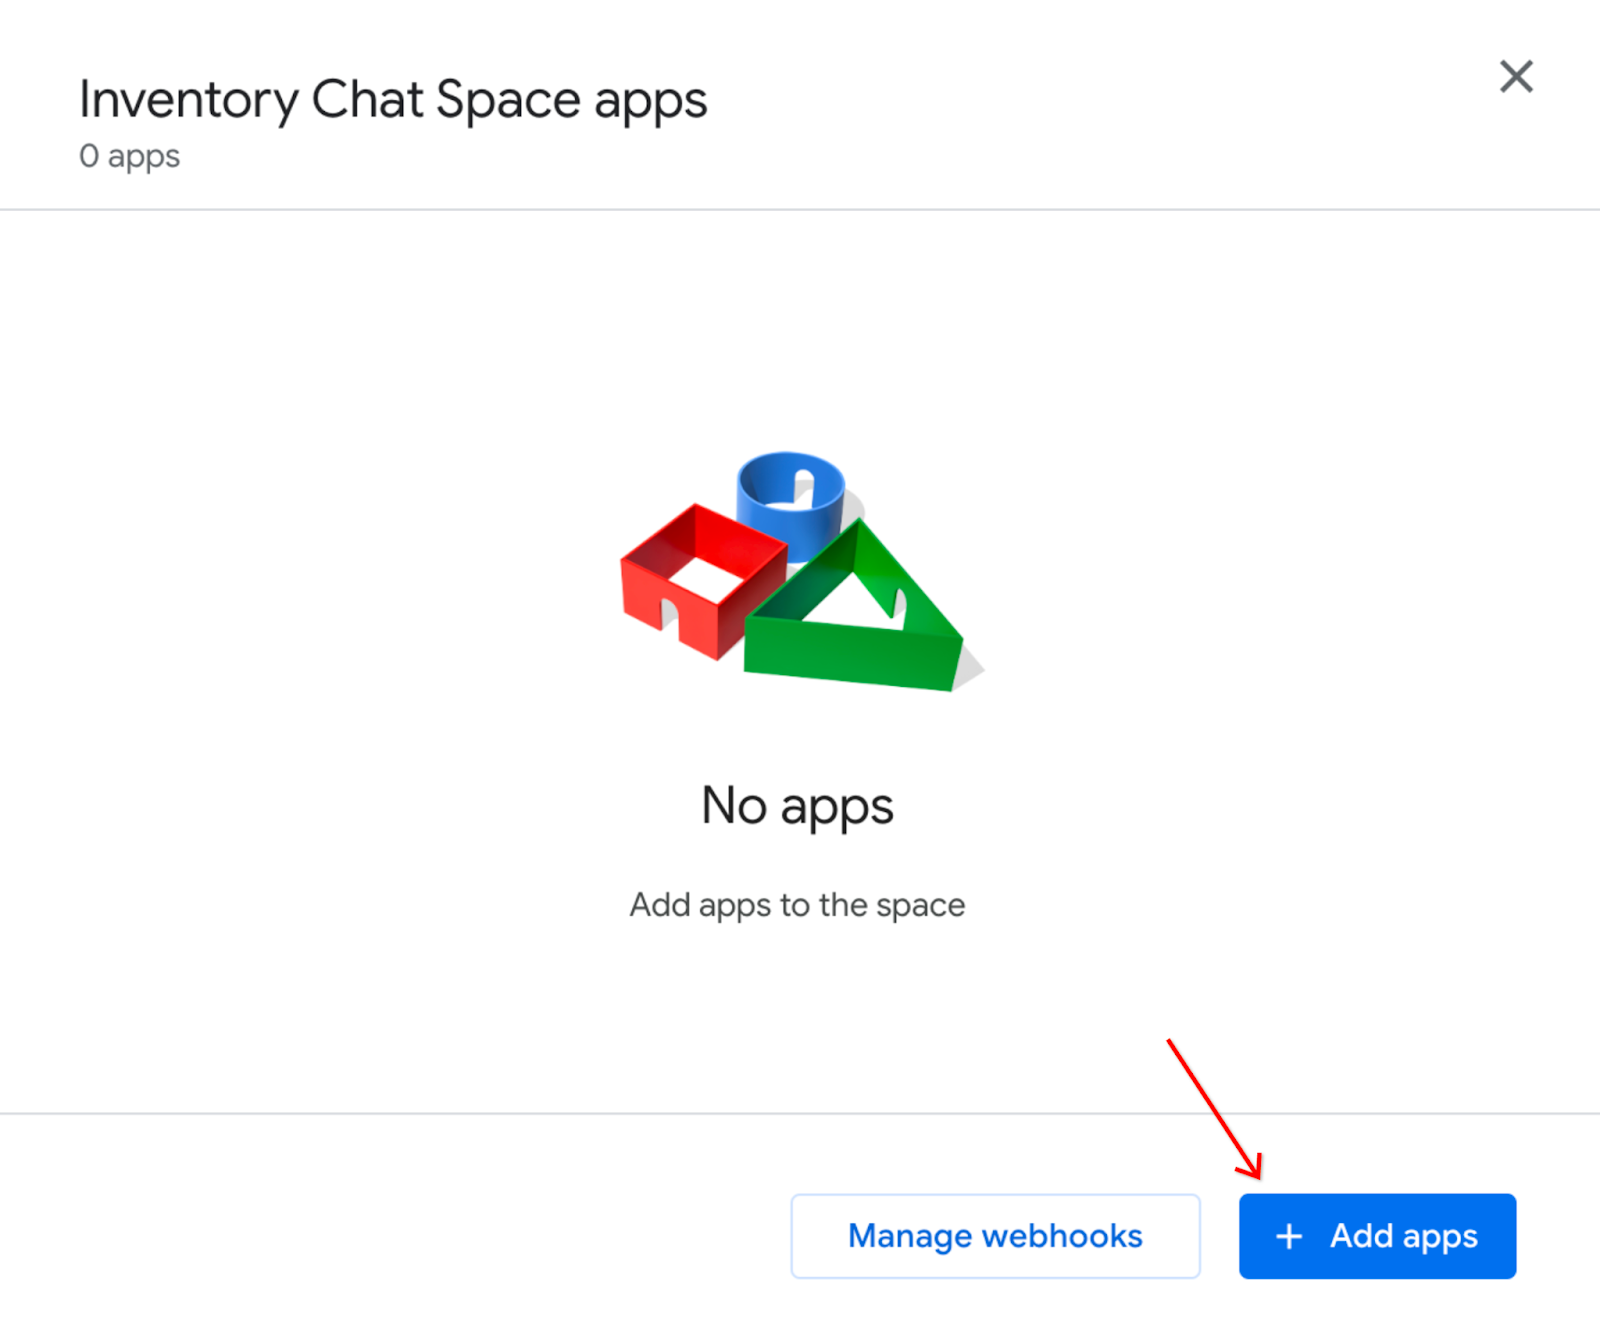 Ajout d'applications à "Inventory Chat Space" (Espace Chat de l'inventaire)